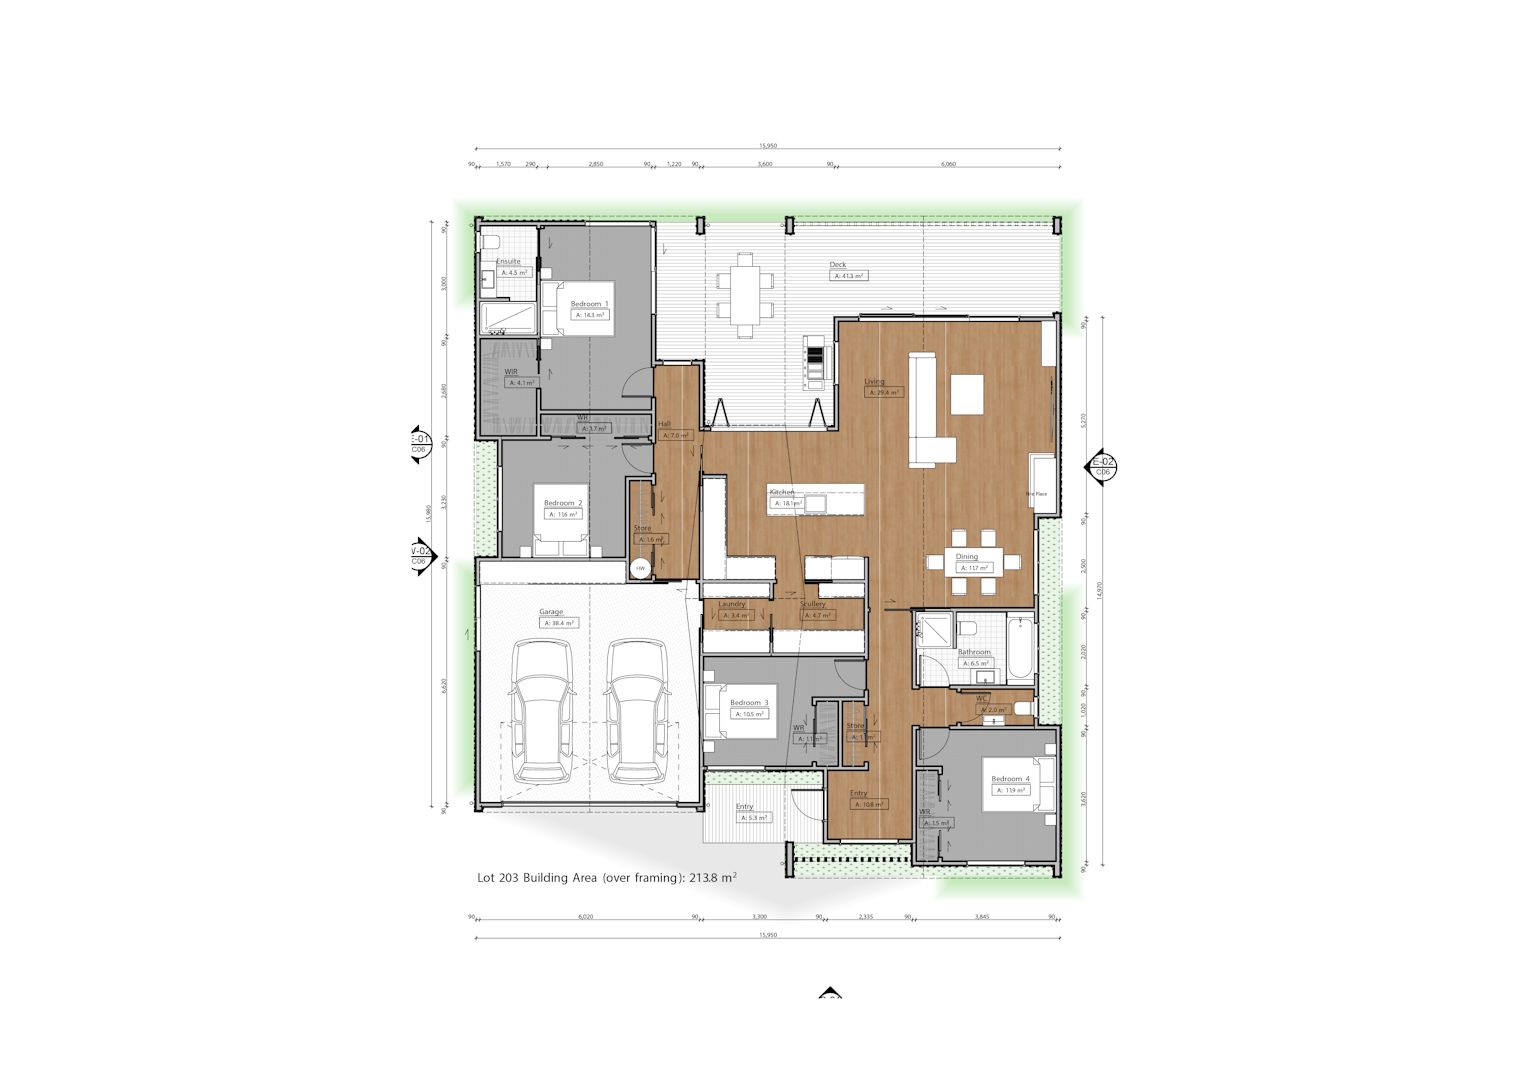 Lot 203 - Harbour Ridge, Omokoroa floor plan